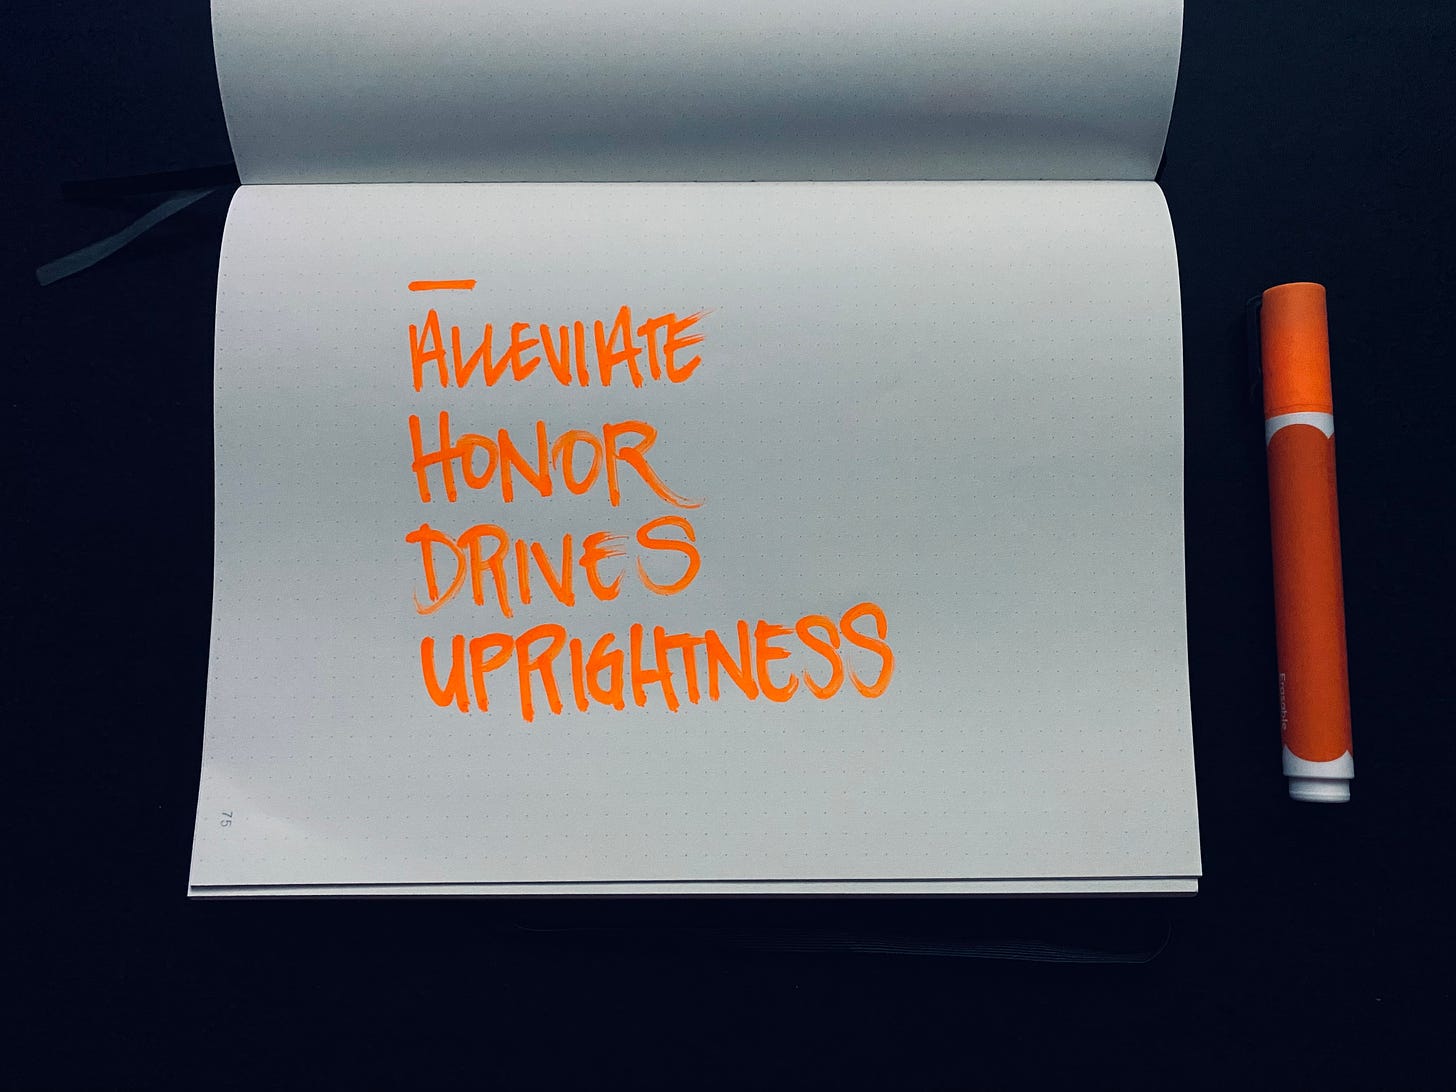 Words in a notebook, written in orange paint